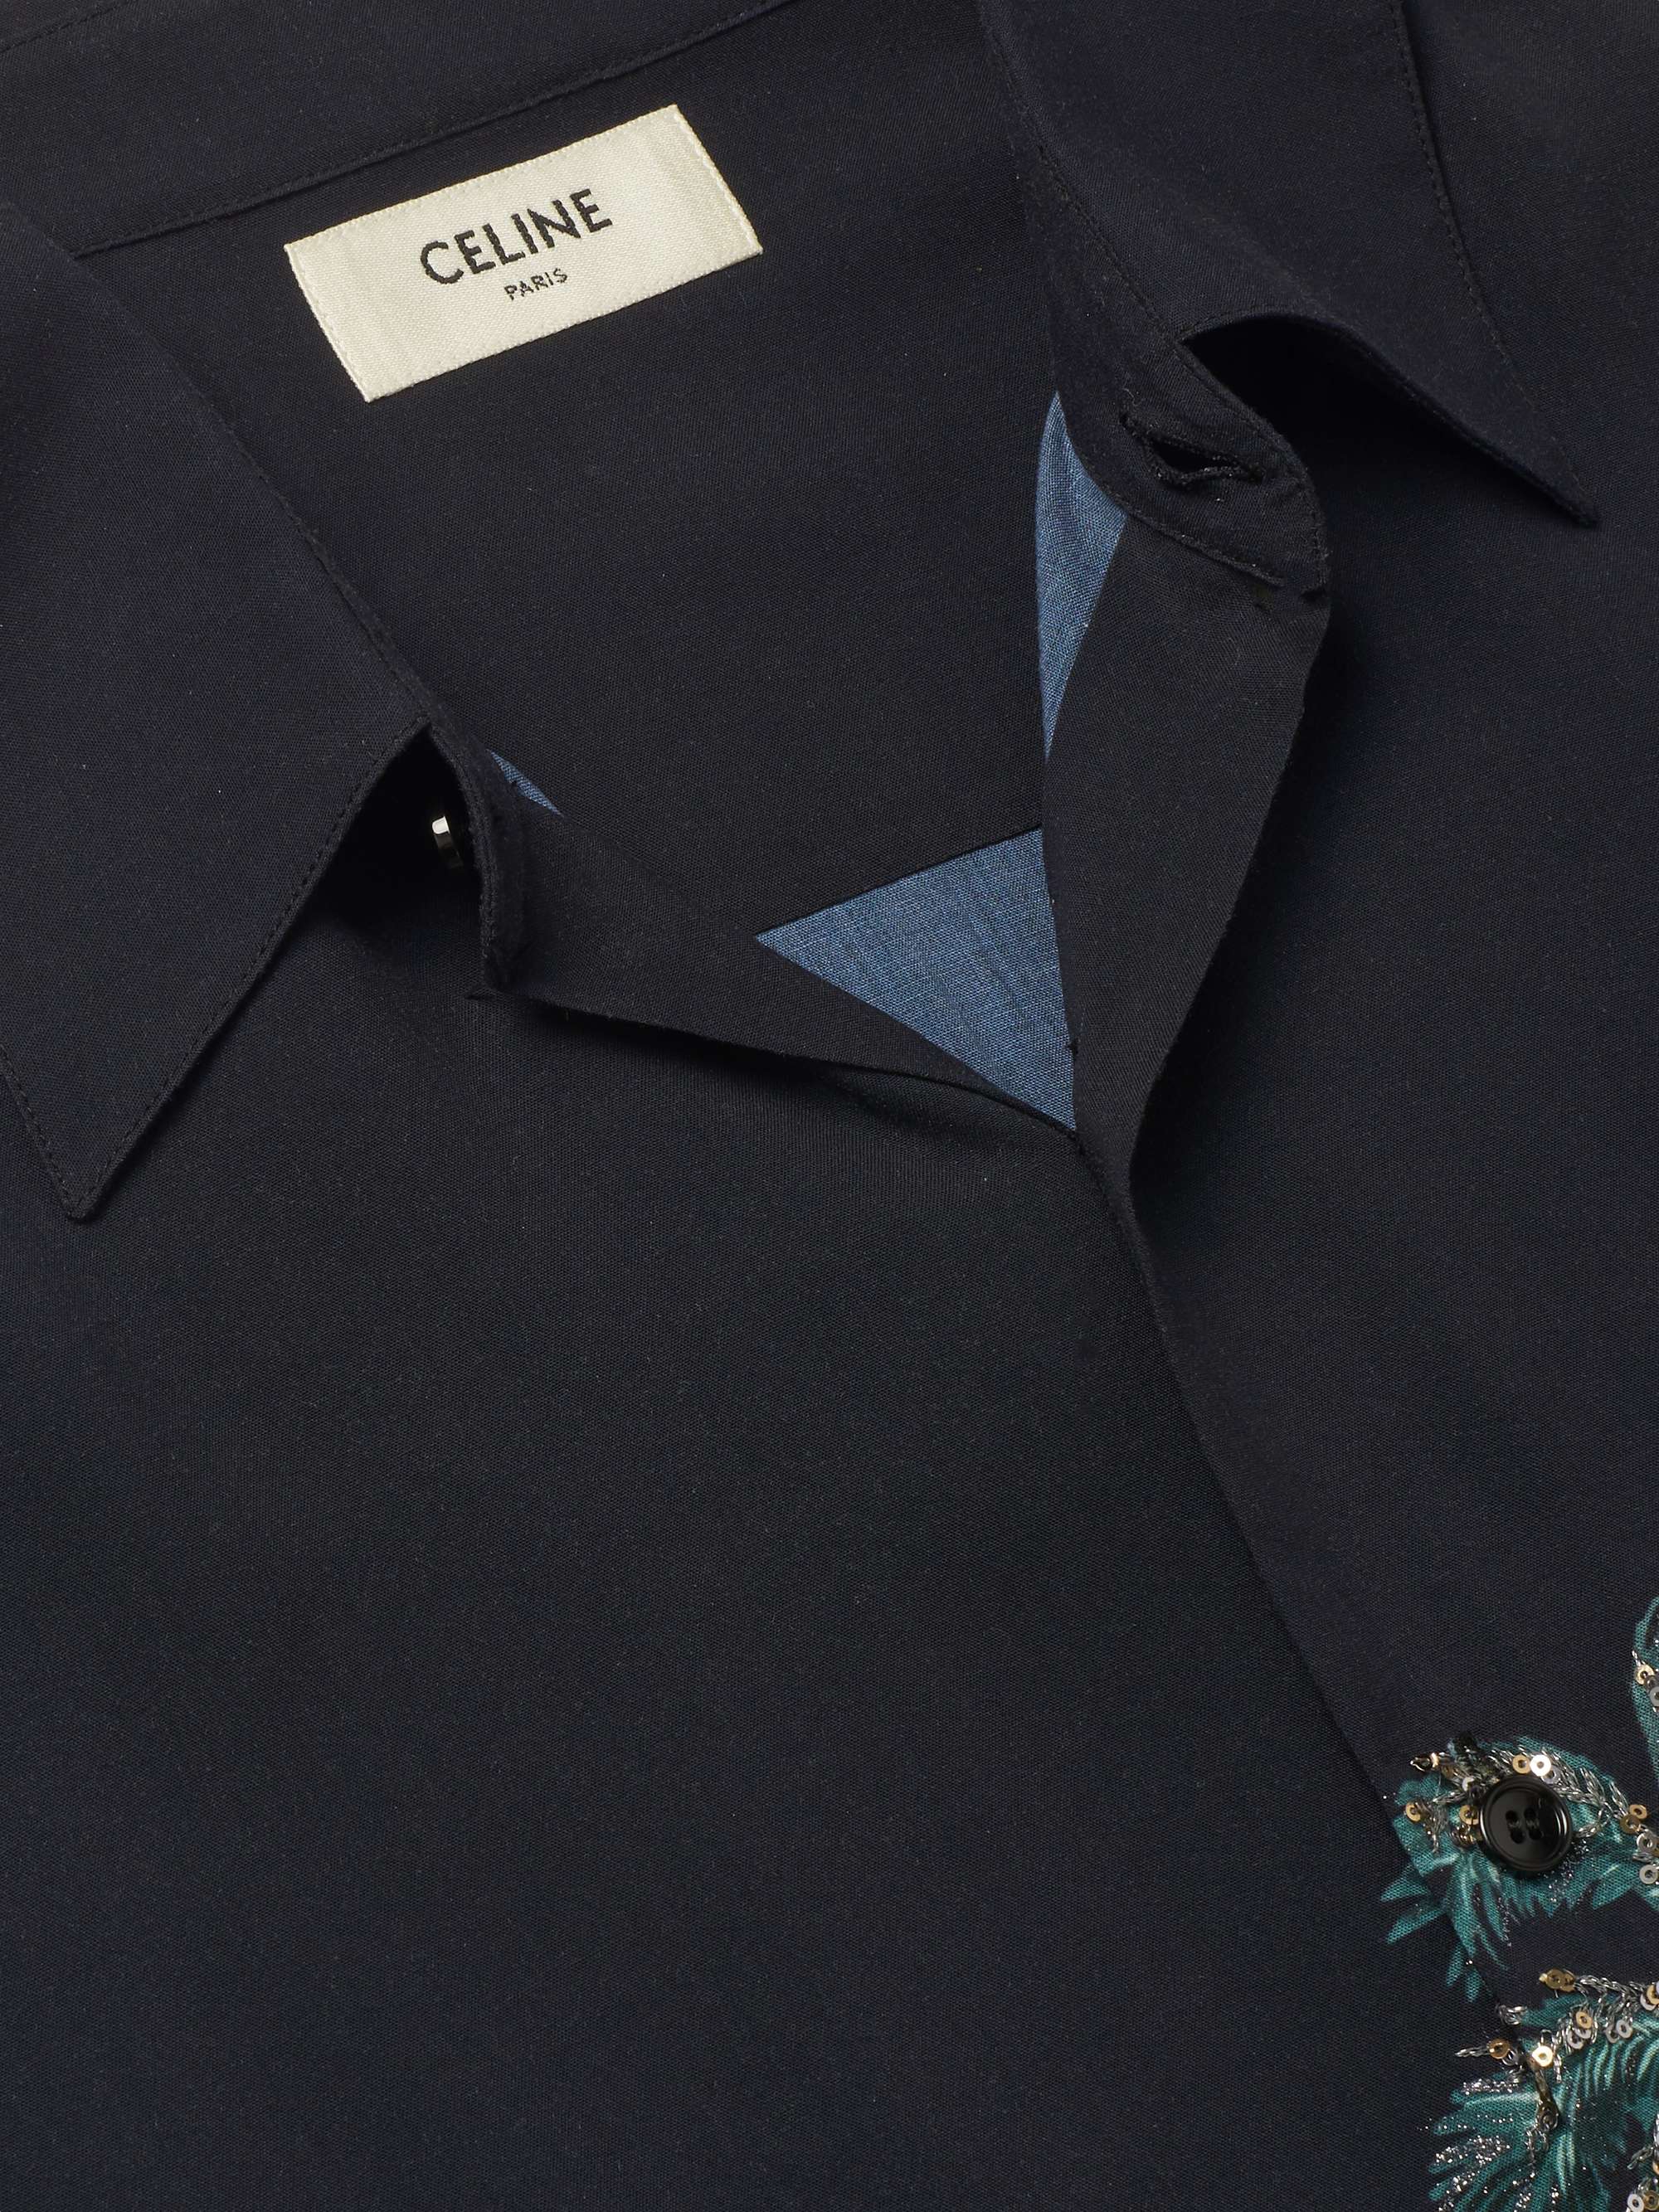 CELINE HOMME Sequin-Embellished Printed Dégradé Woven Shirt